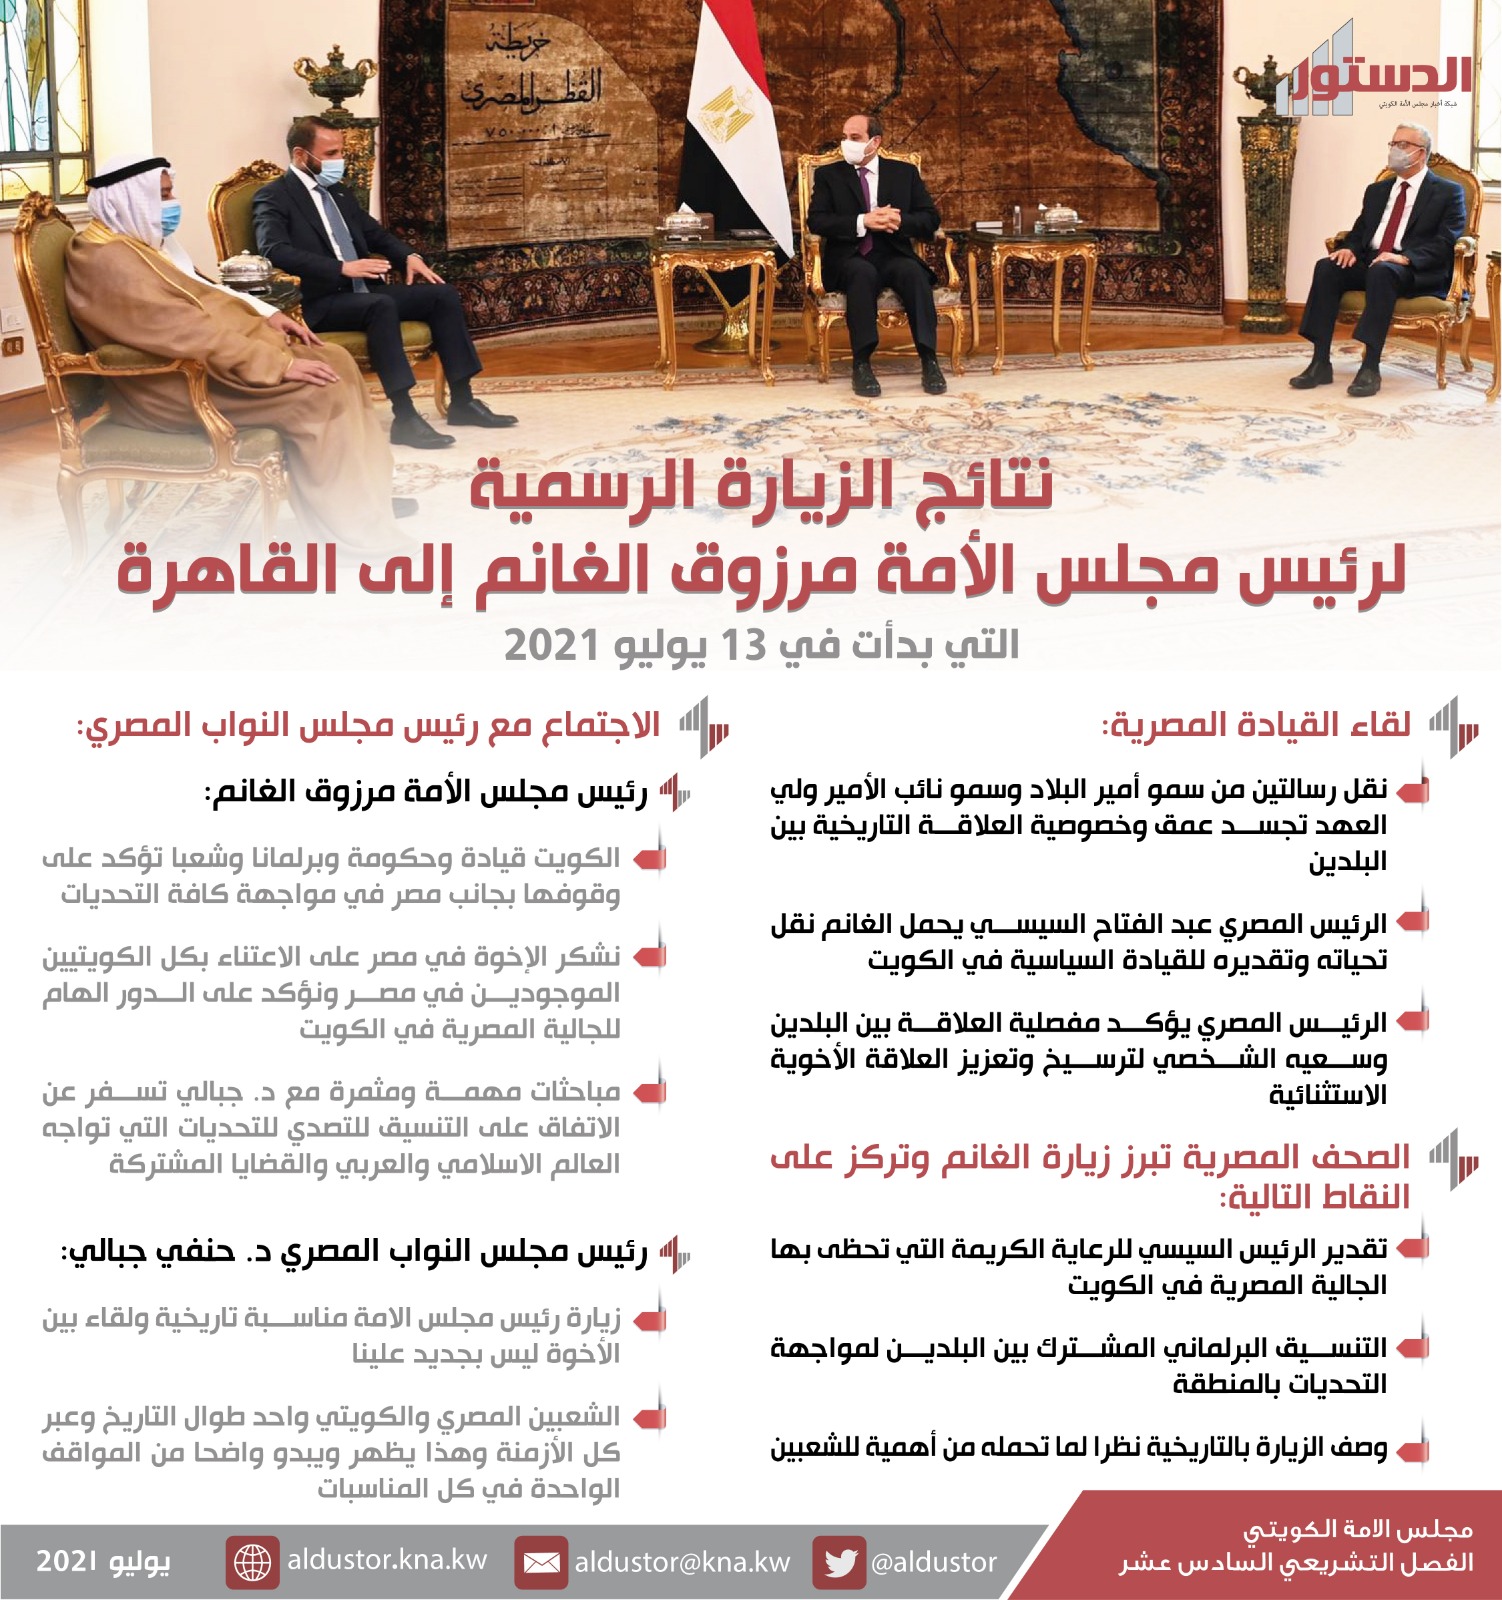 الغانم يزور القاهرة.. رسائل رسمية وجهود دبلوماسية لتنسيق المواقف وتعزيز الروابط